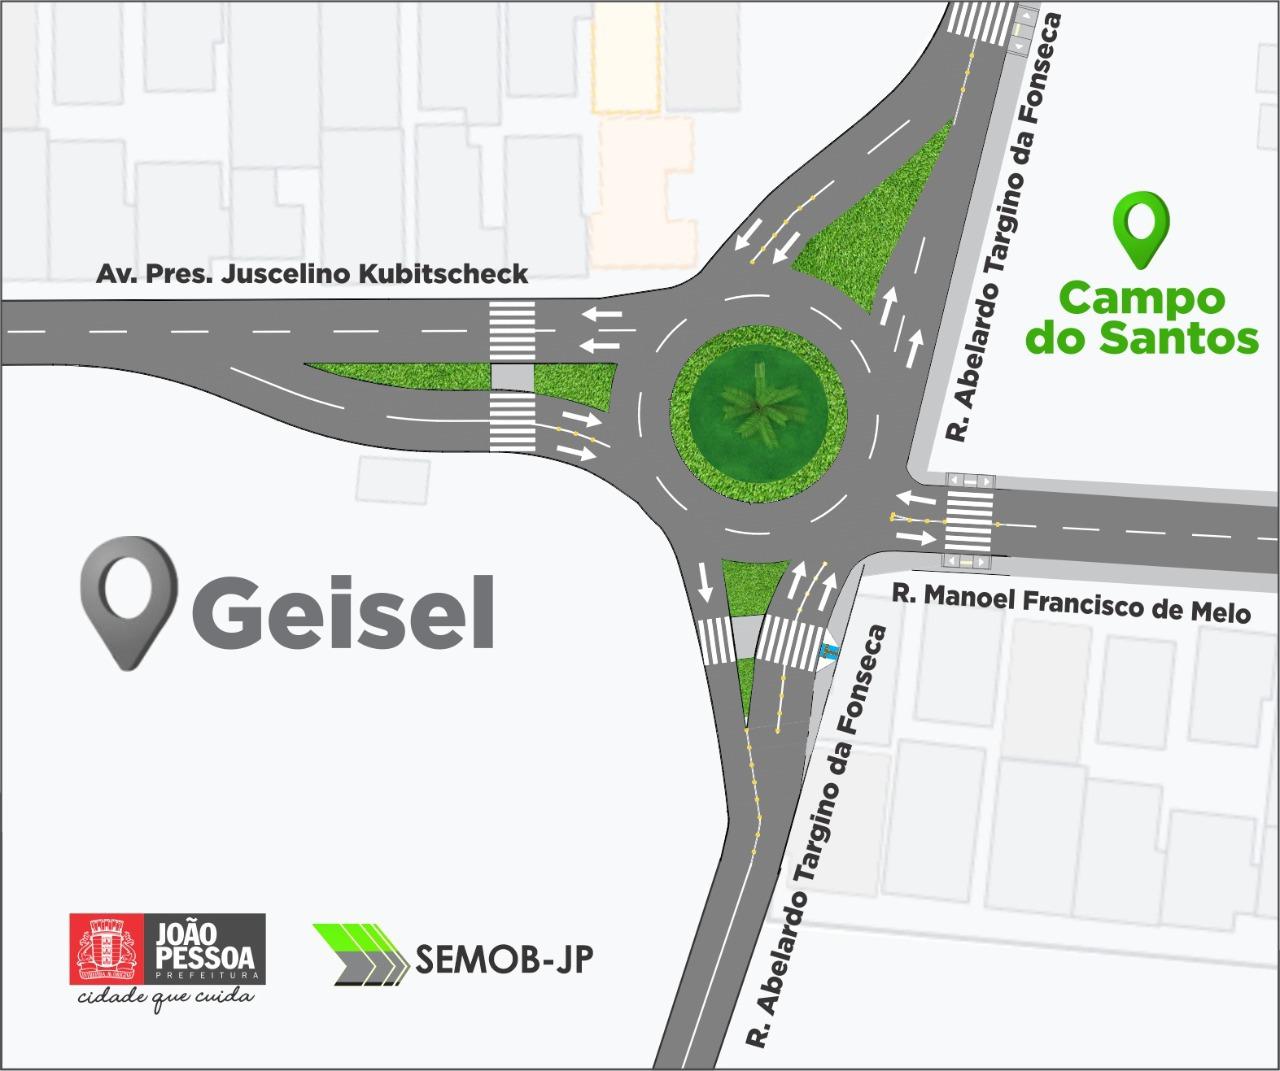 WhatsApp Image 2021 07 30 at 06.24.50 - Prefeitura de João Pessoa inicia obras da nova rotatória do Campo do Santos, no bairro do Geisel - VEJA MUDANÇAS